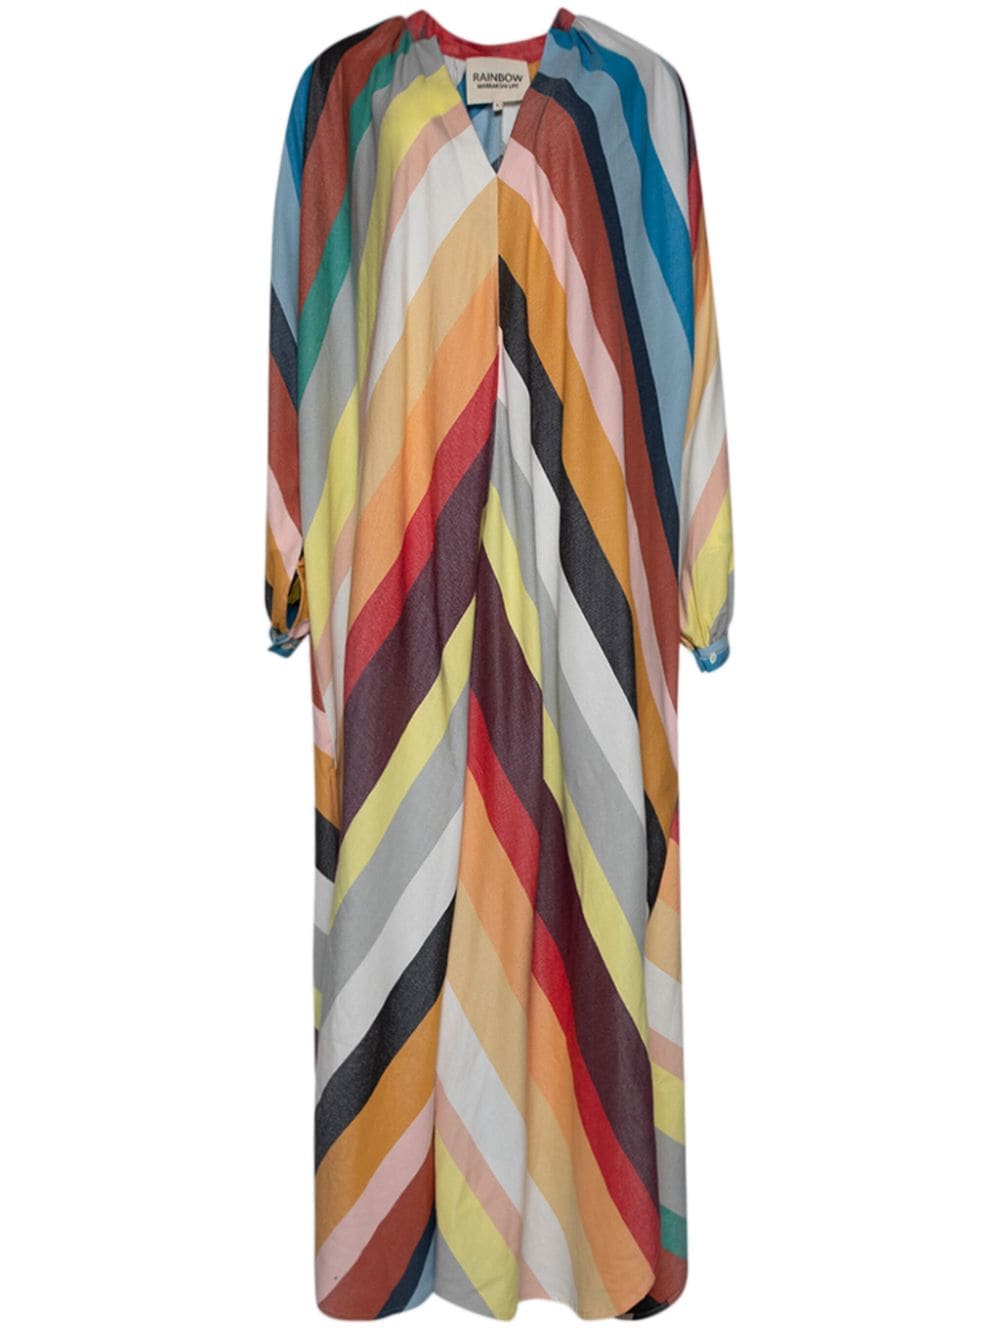 Touareg chevron-stripe maxi dress